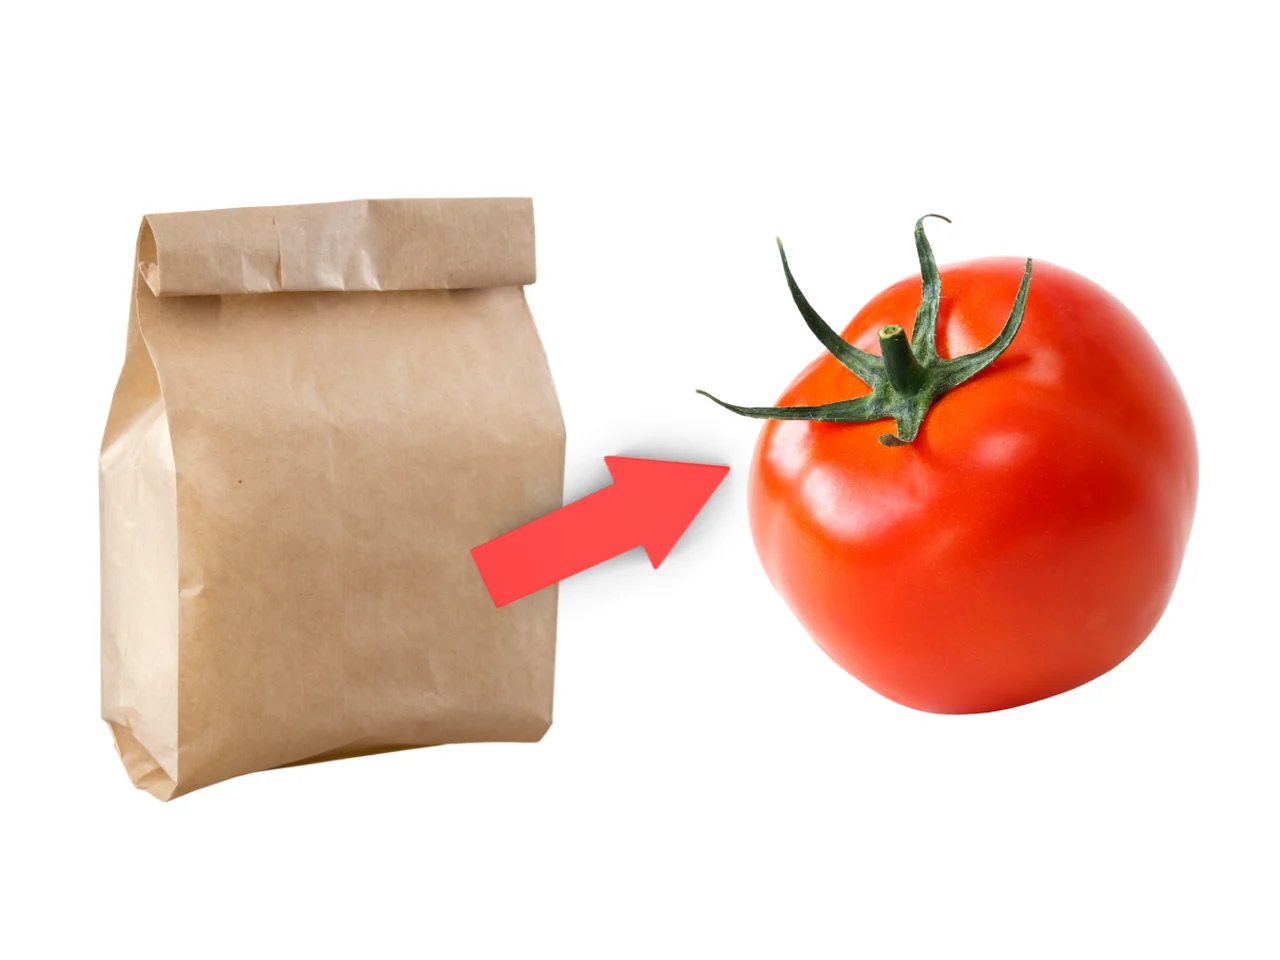 Dlaczego warto wkładać pomidory do papierowej torby?